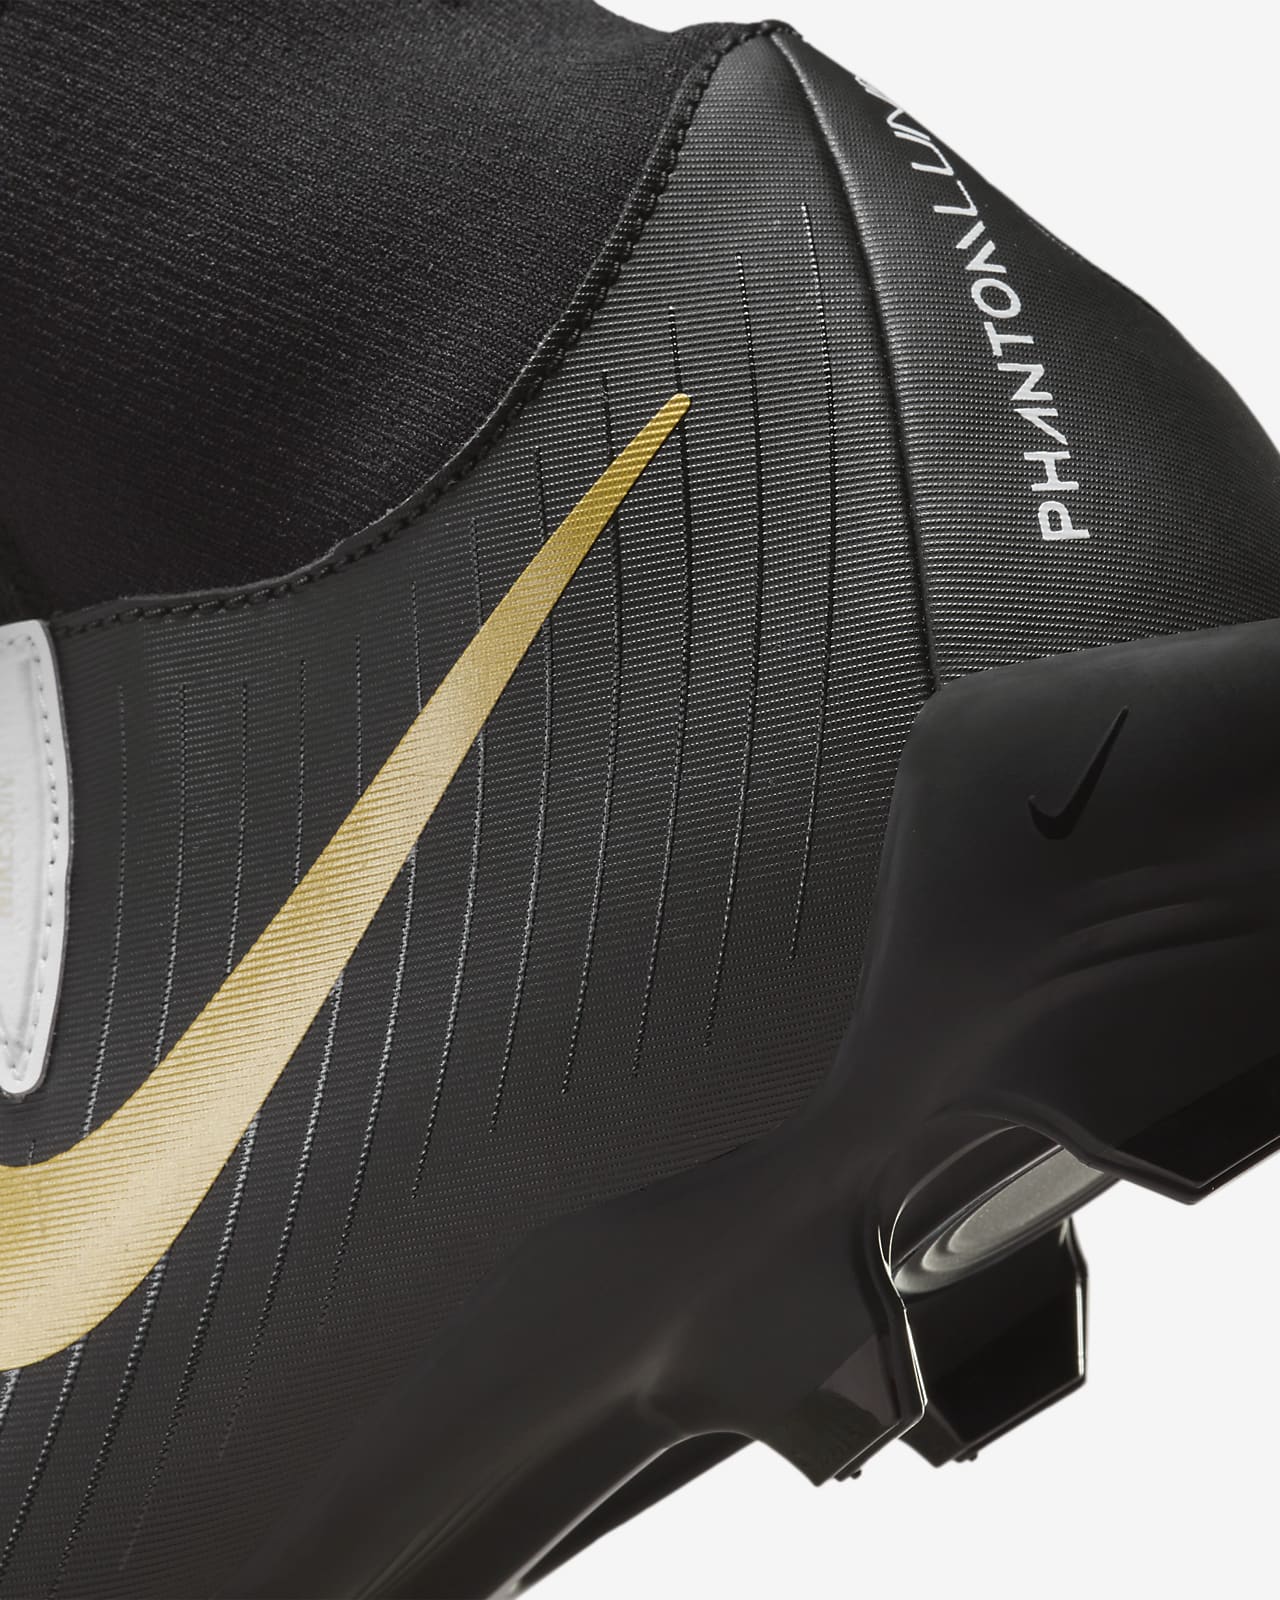 Nike presenta Phantom Luna: la scarpa da calcio pensata per lei frutto di  anni di studio e innovazione - Calcio femminile italiano